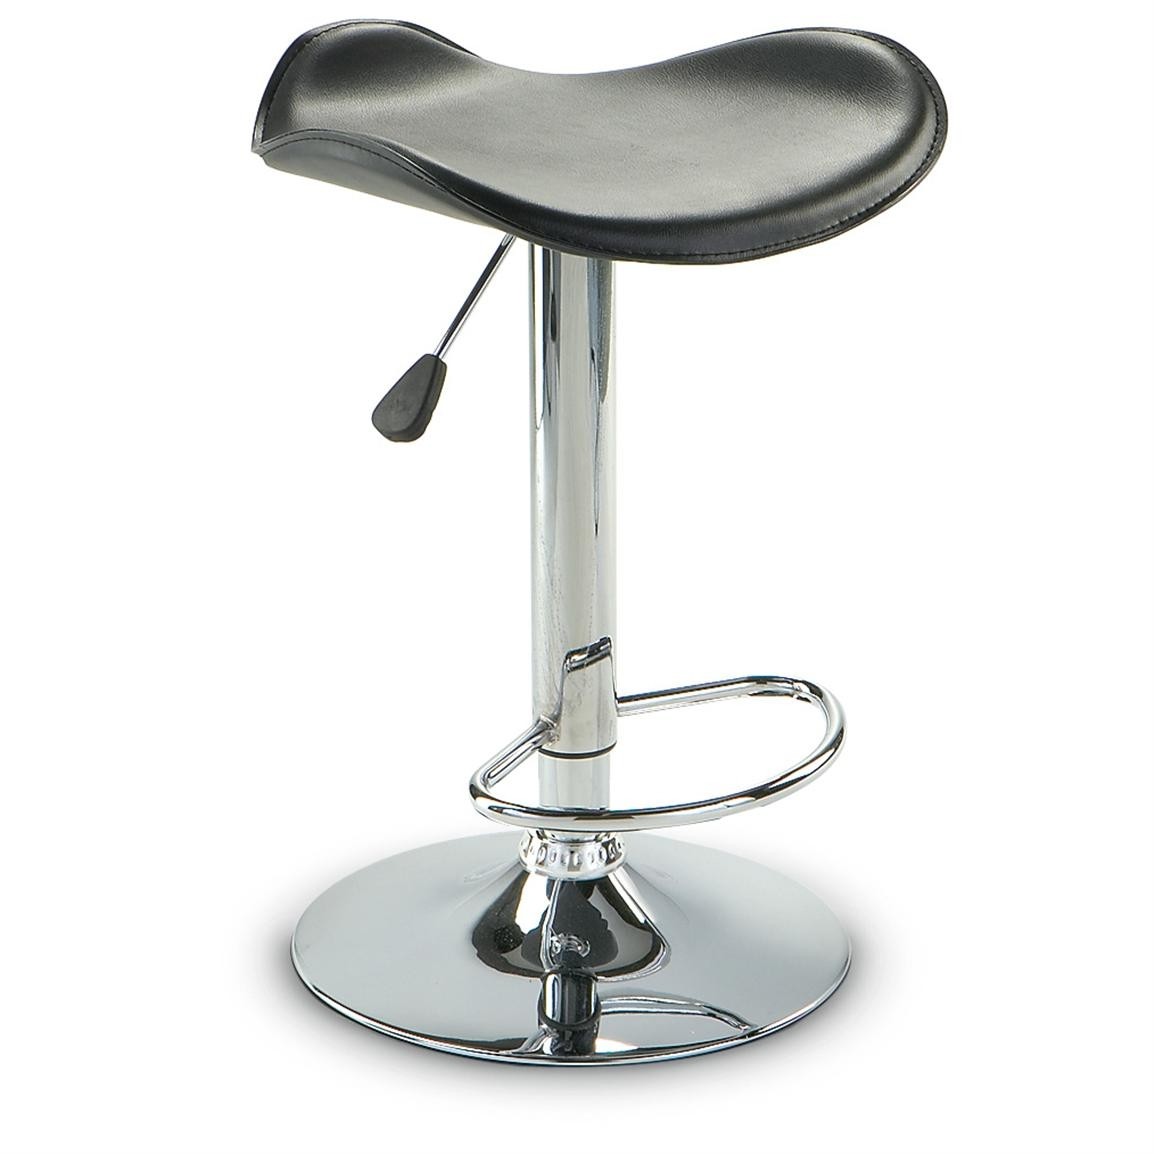 Adjustable saddle style bar stool 168169 kitchen